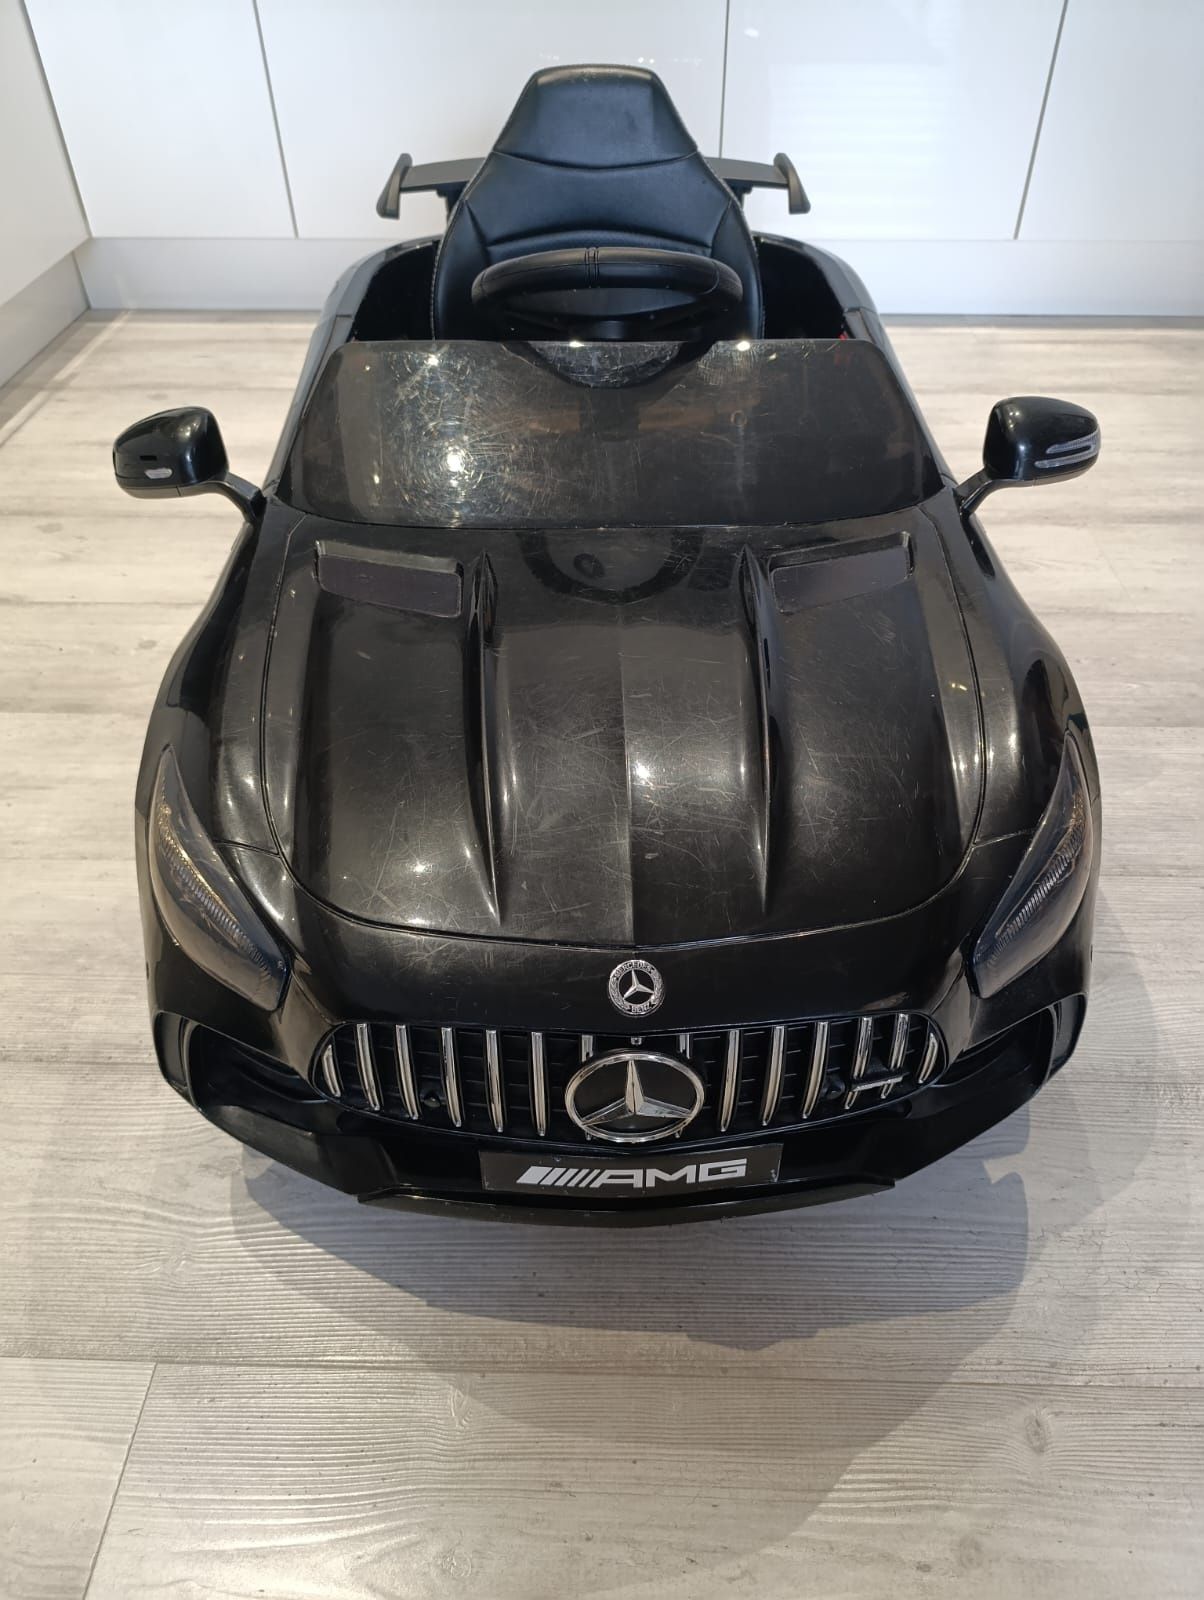 Samochód elektryczny dla dzieci

Model: Mercedes-Benz AMG GT-R CZARNY